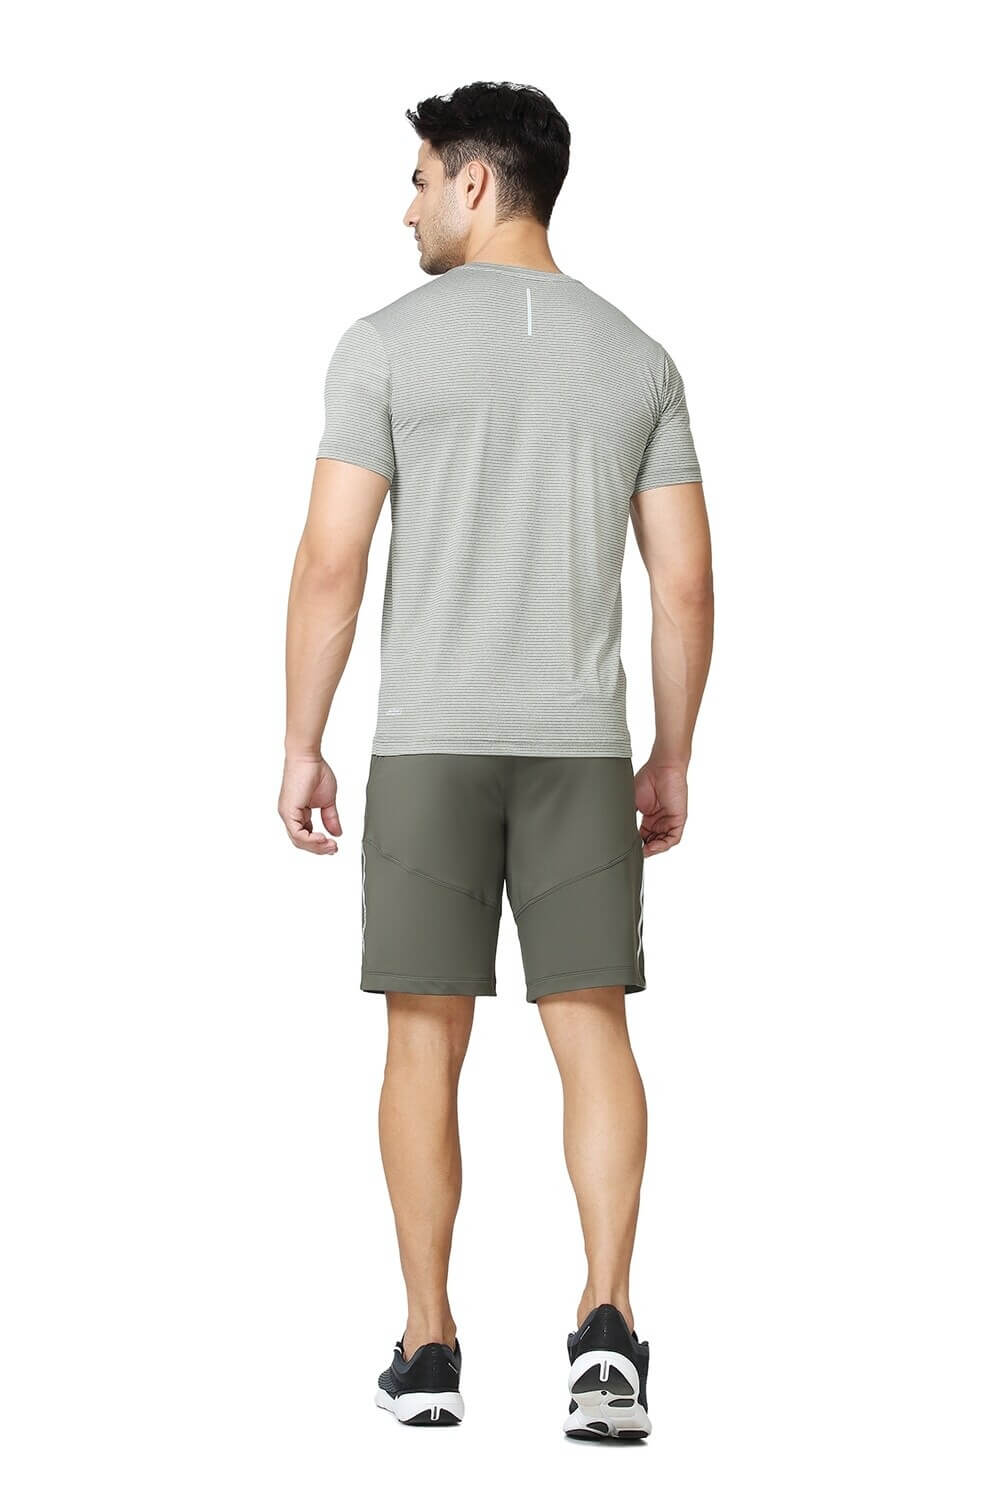 Van Heusen Olive Active Shorts for Men #51001